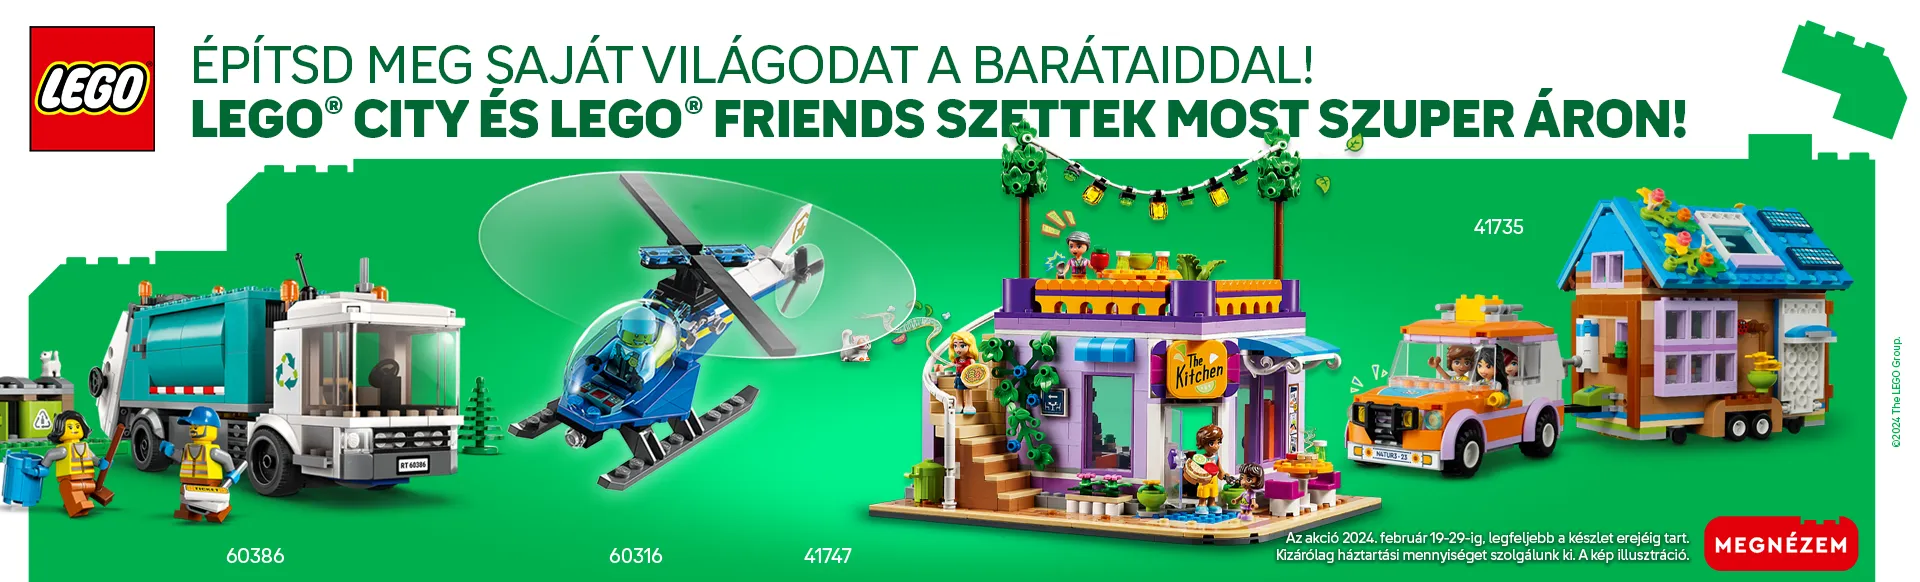 LEGO City és Friends akció!